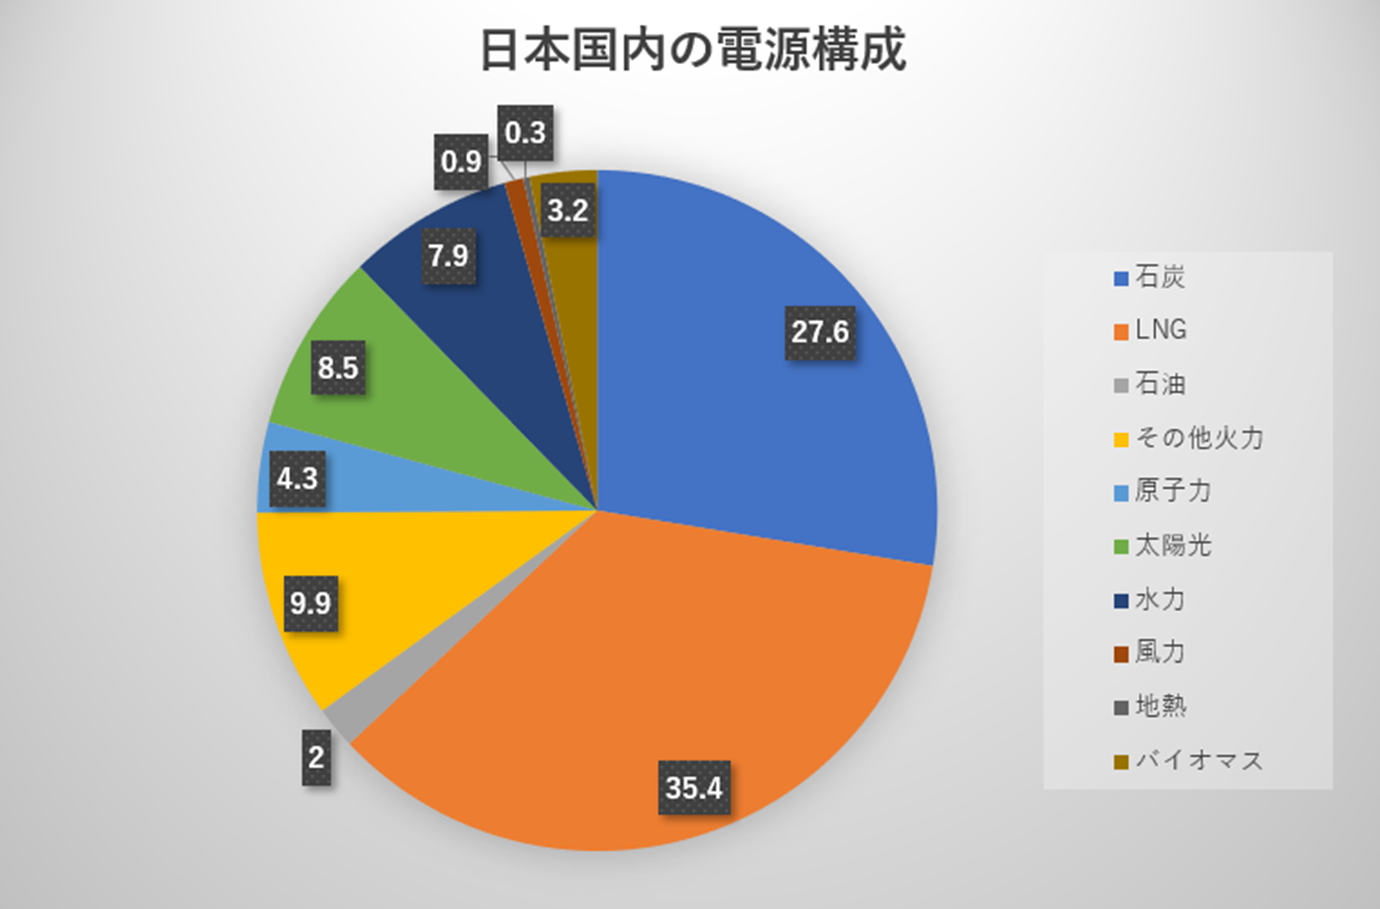 日本国内の電源構成(2020年度の年間発電電力量